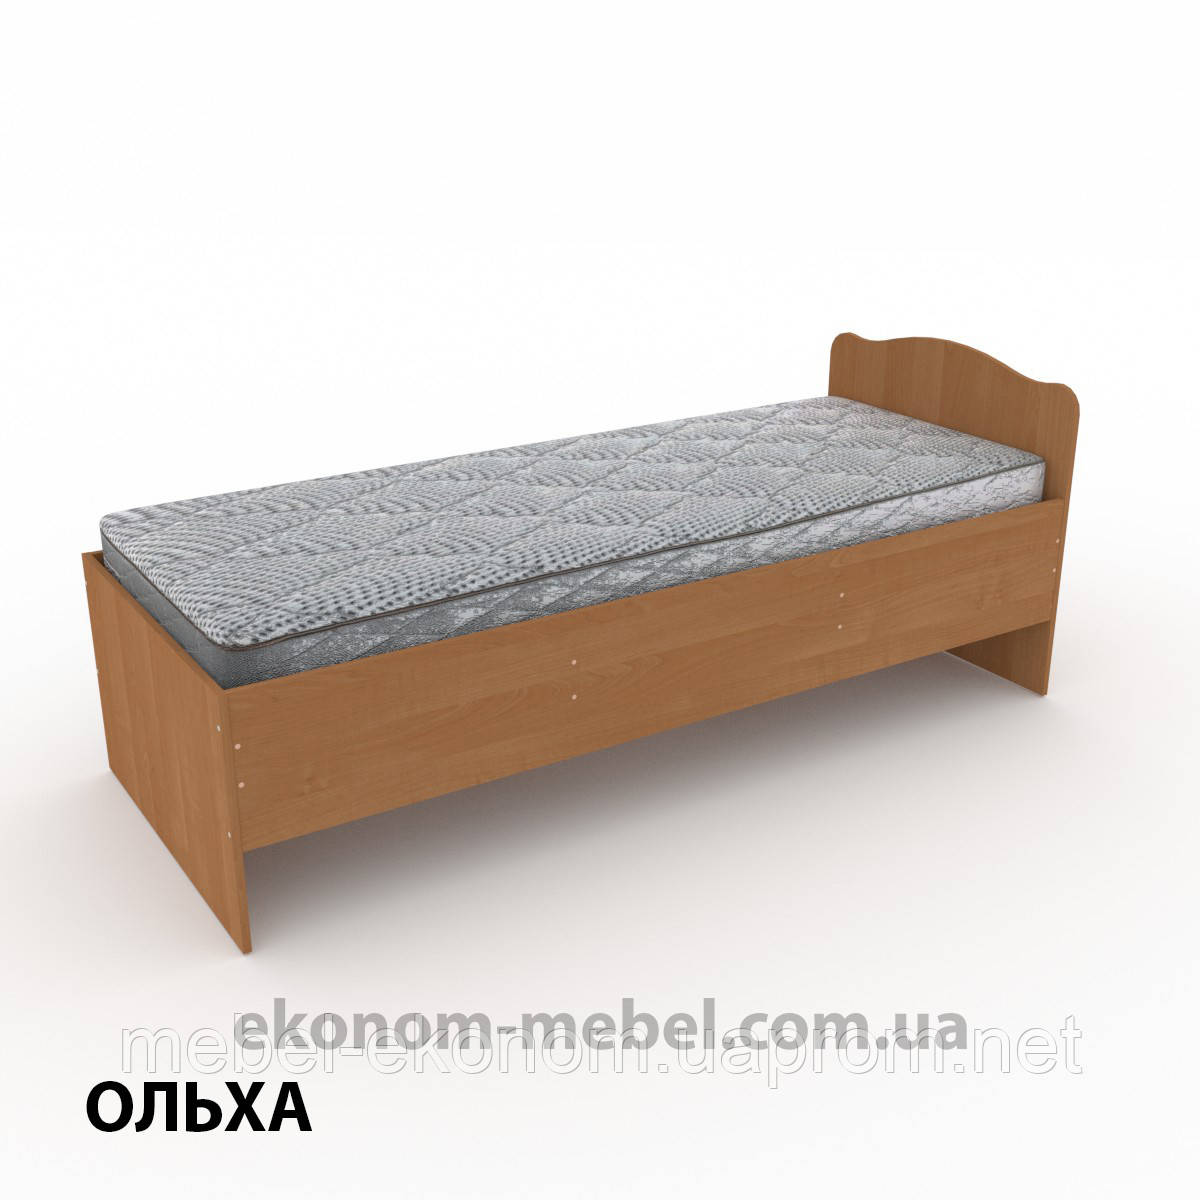 Ліжко-80 односпальне економ-класу